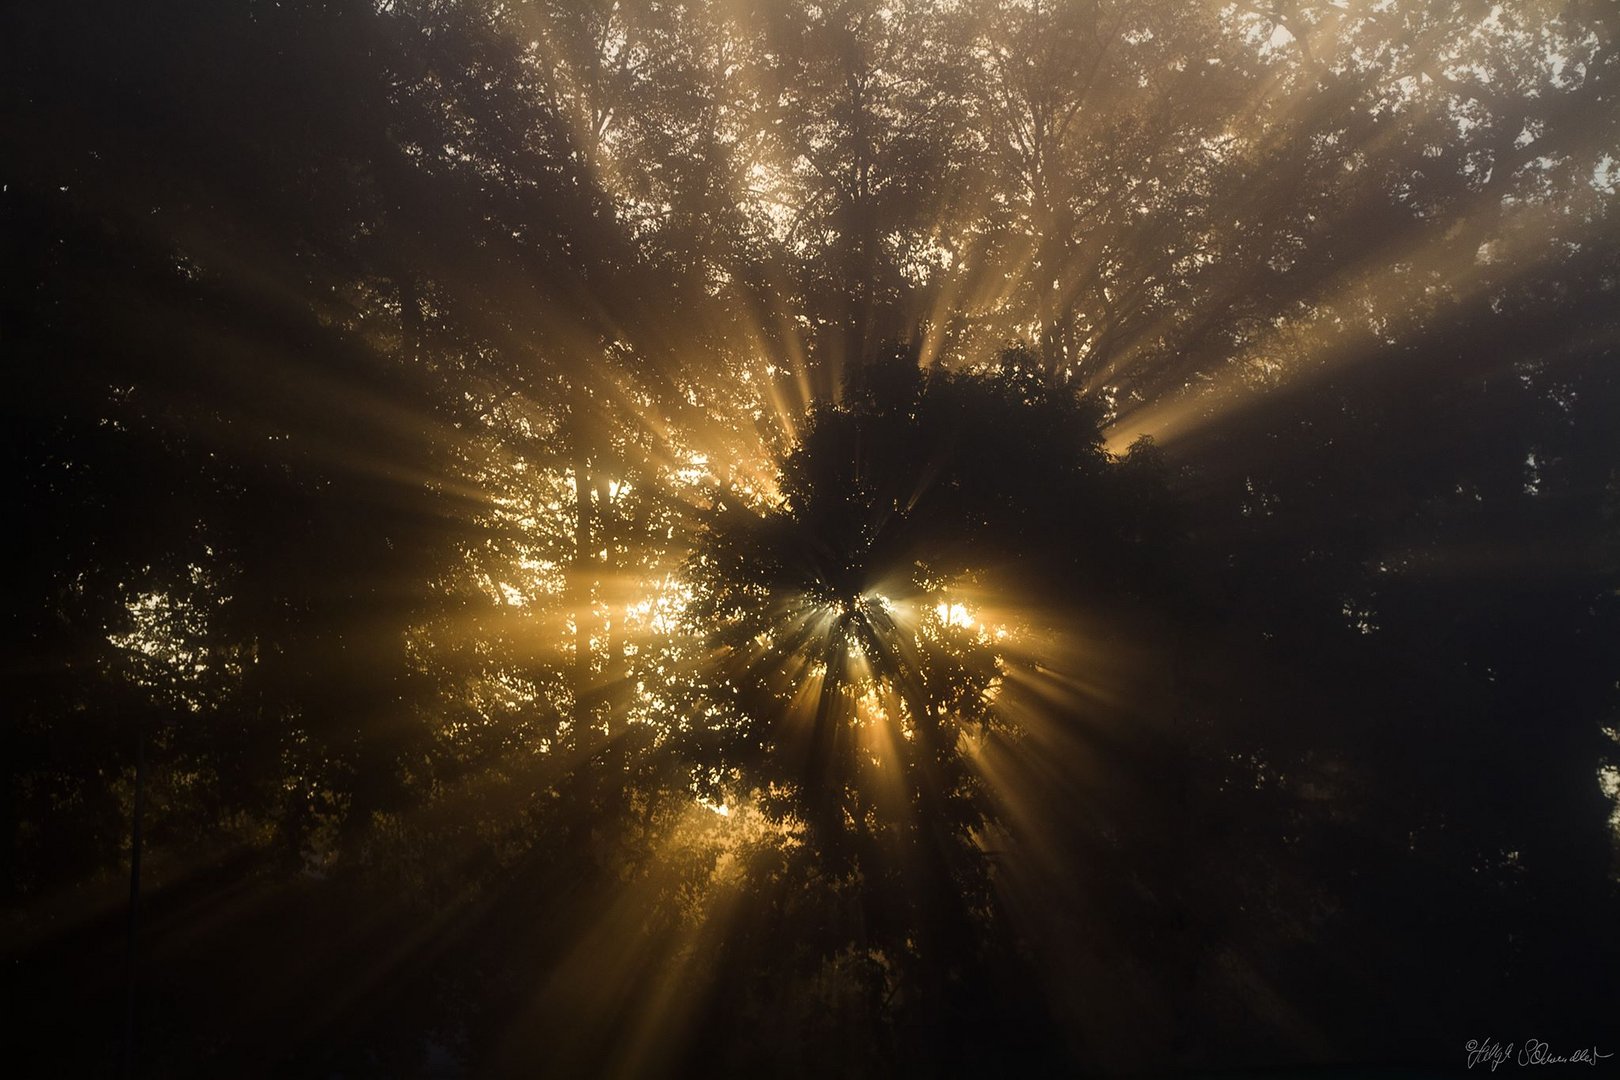 Sonnendurchbruch in den Baumkronen im Nebel